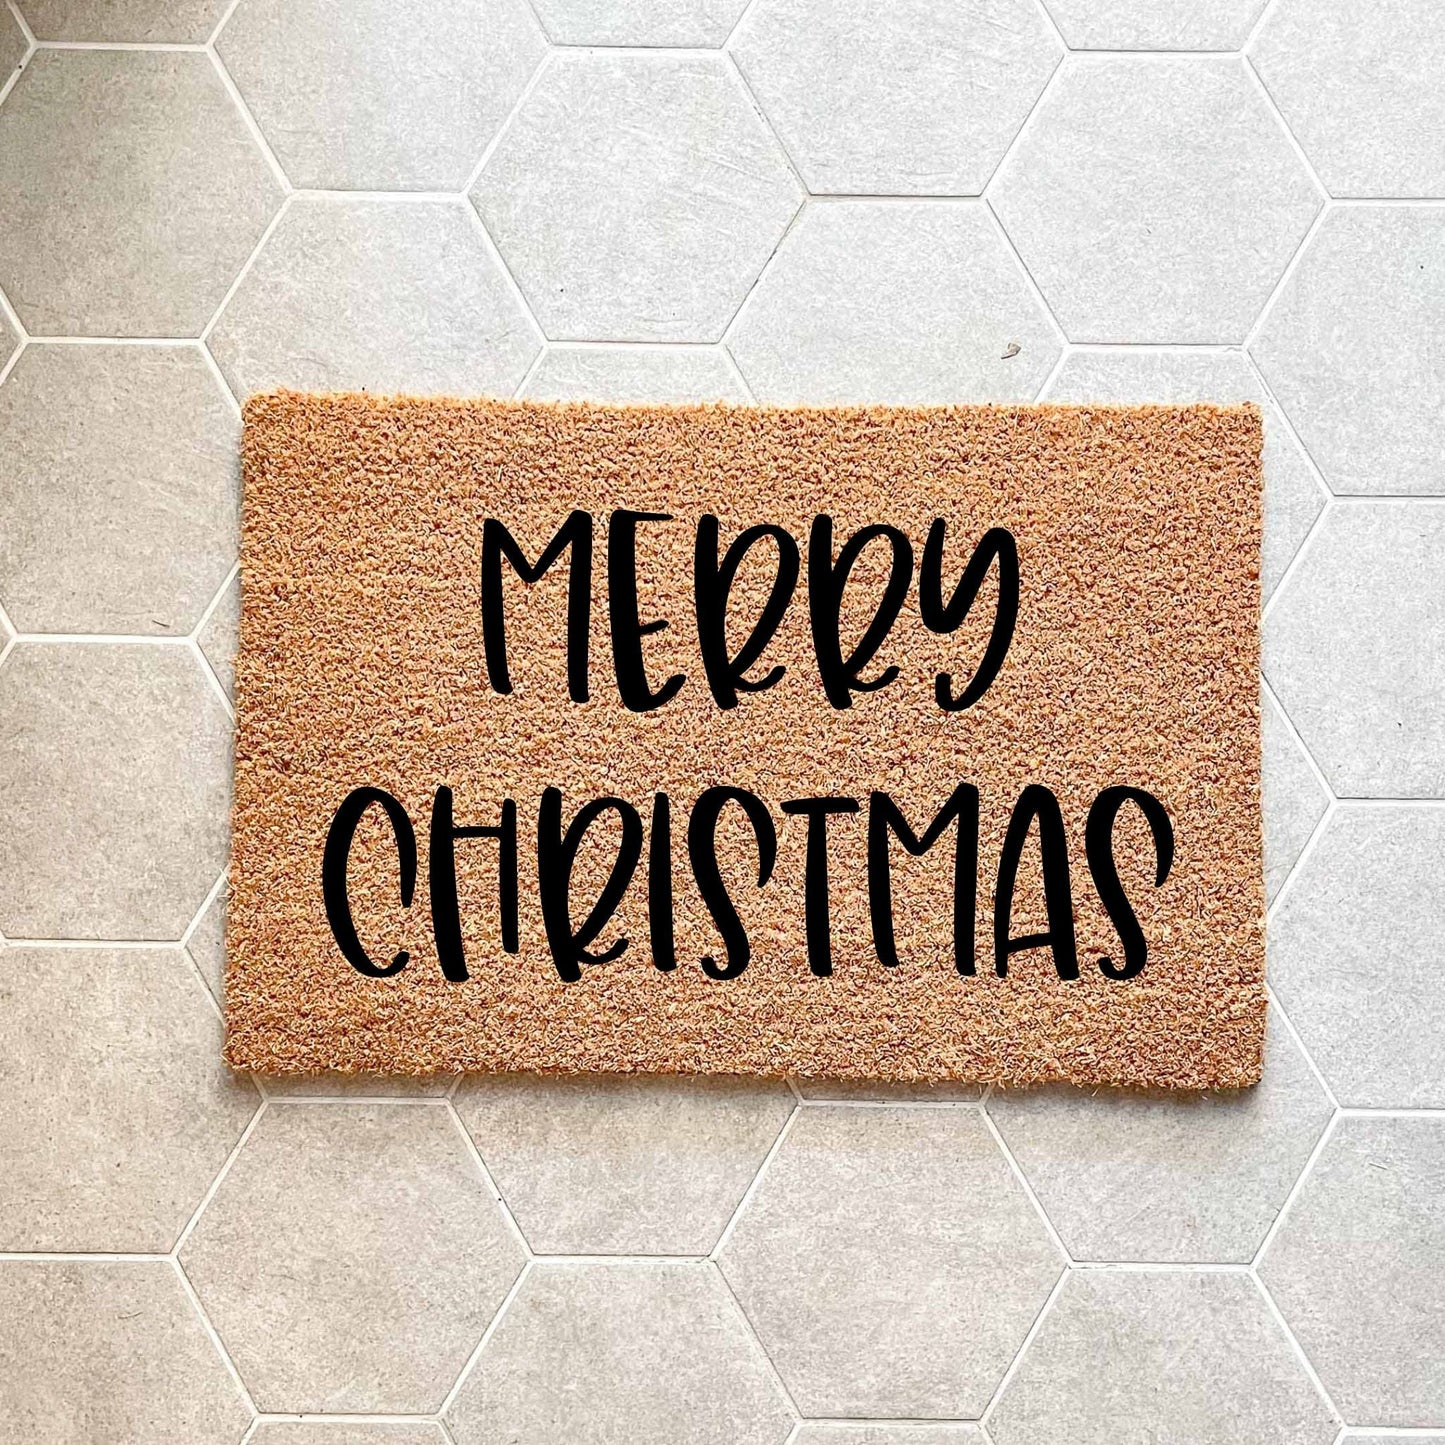 Merry Christmas doormat, Christmas doormat, Seasonal Doormat, Holidays Doormat